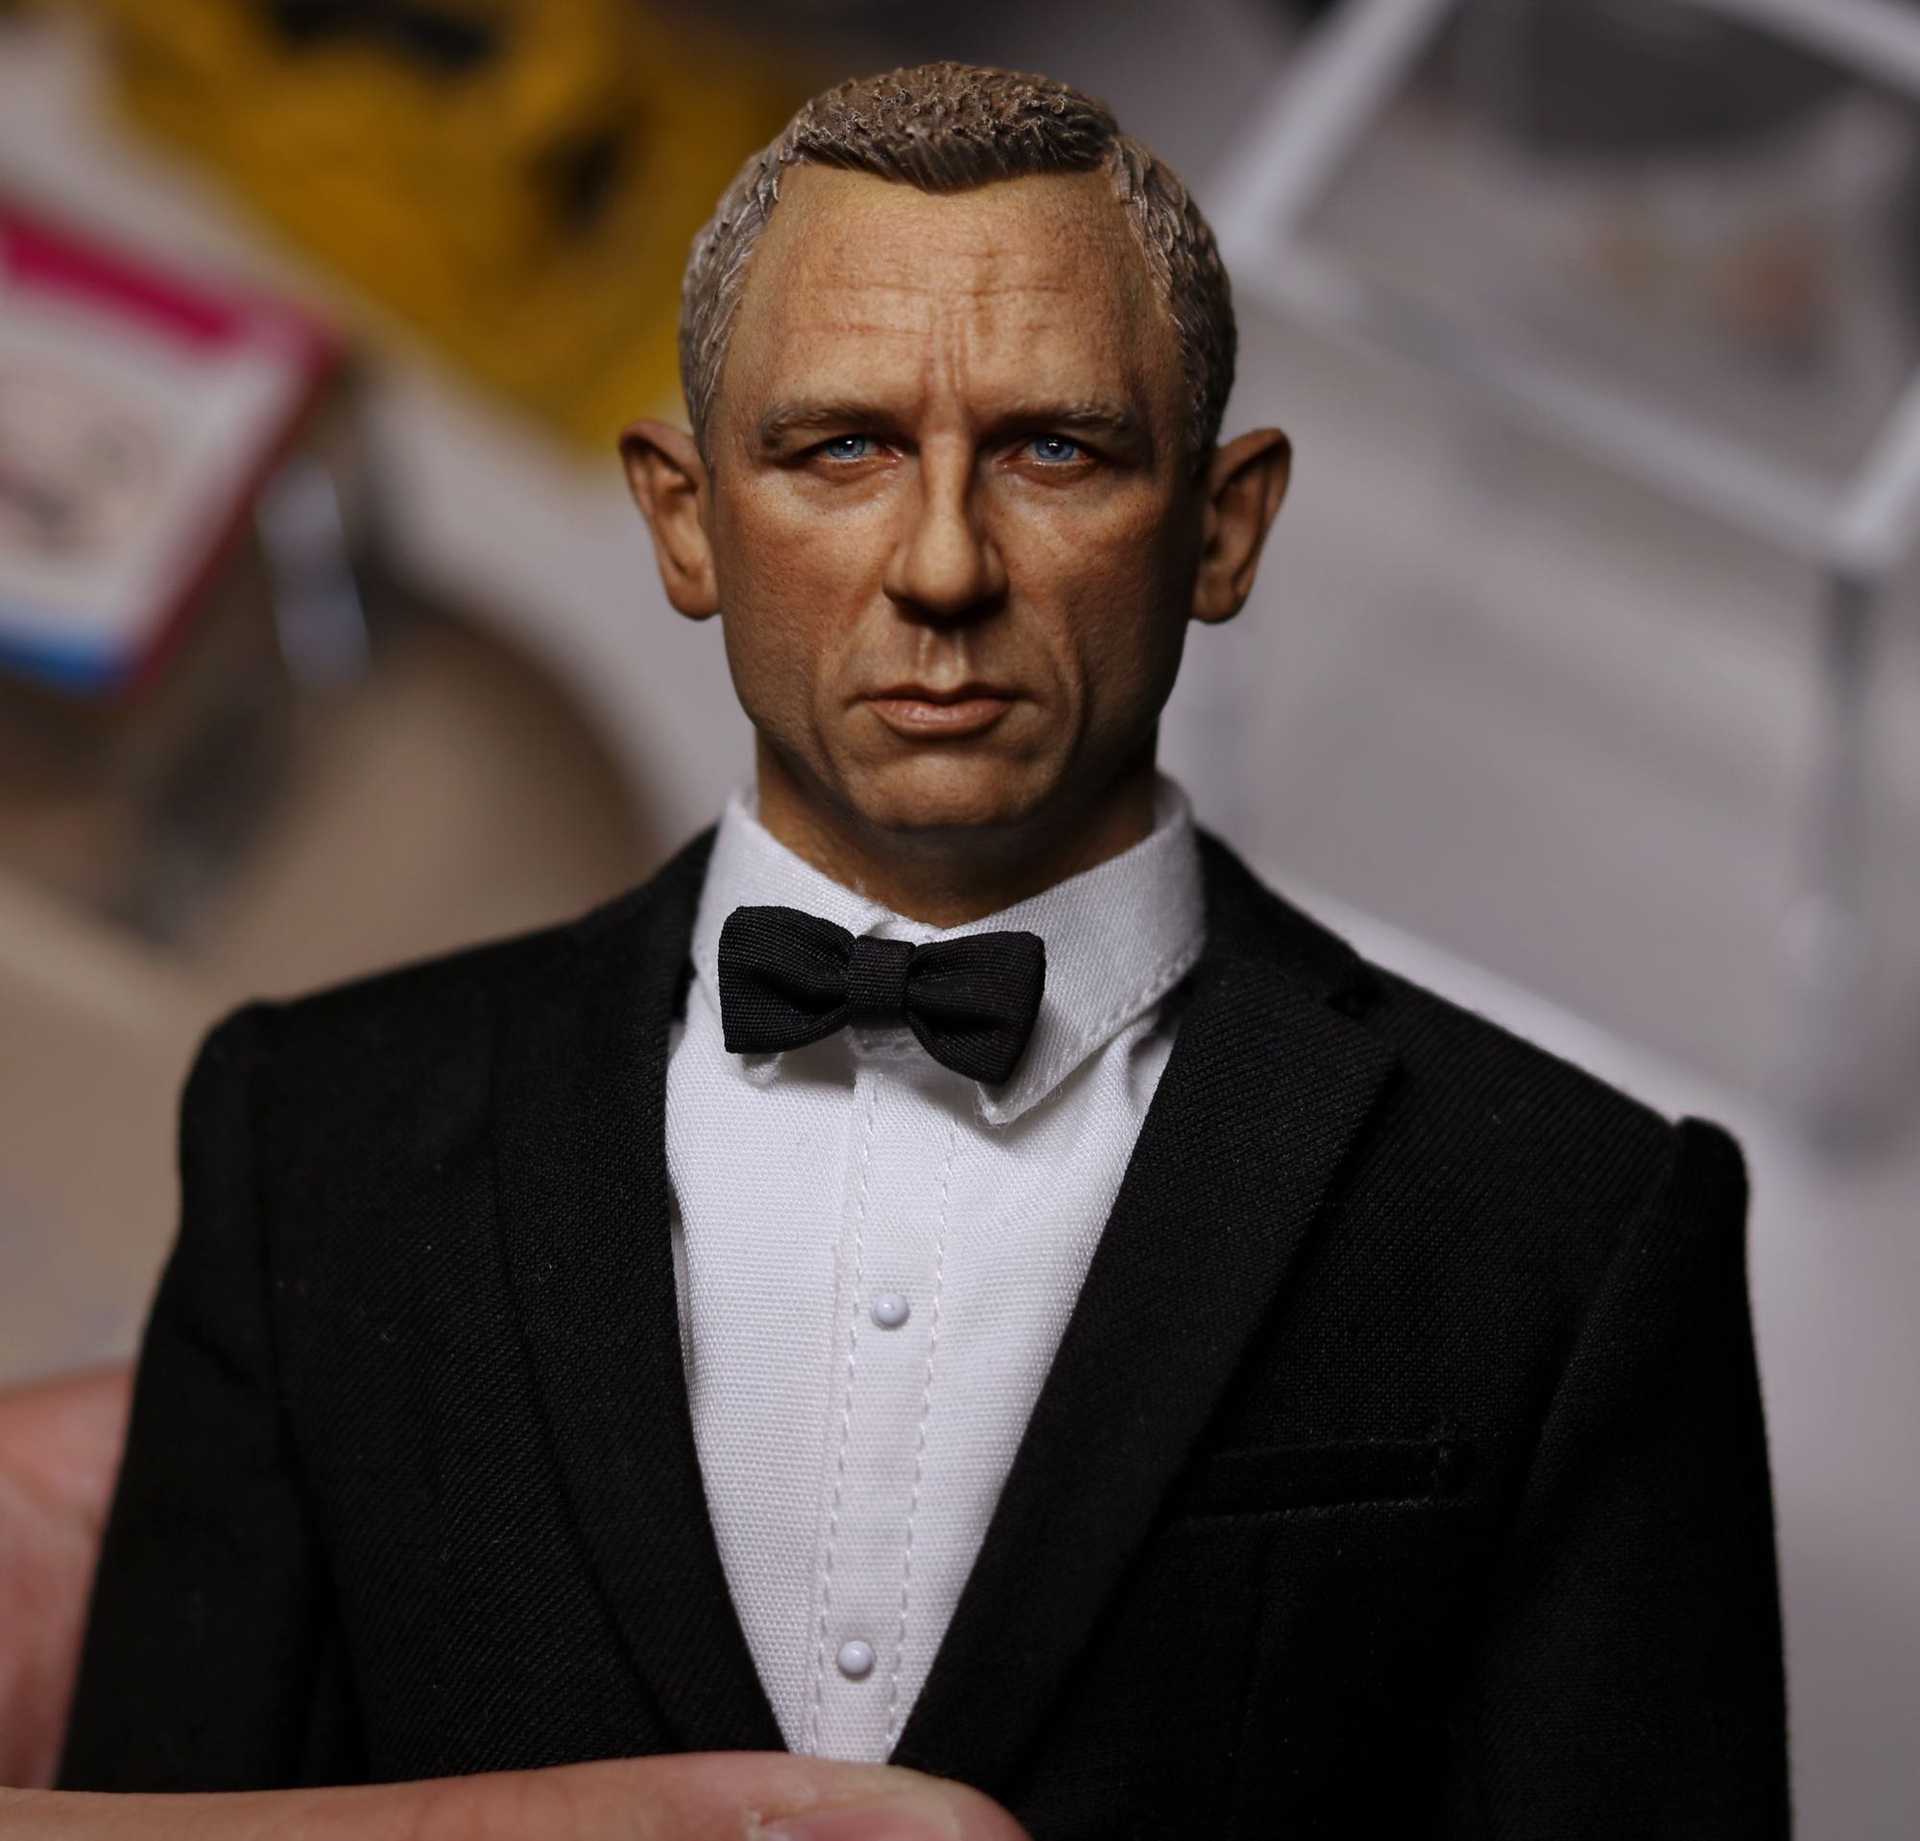 agent 007 casino royale smotret